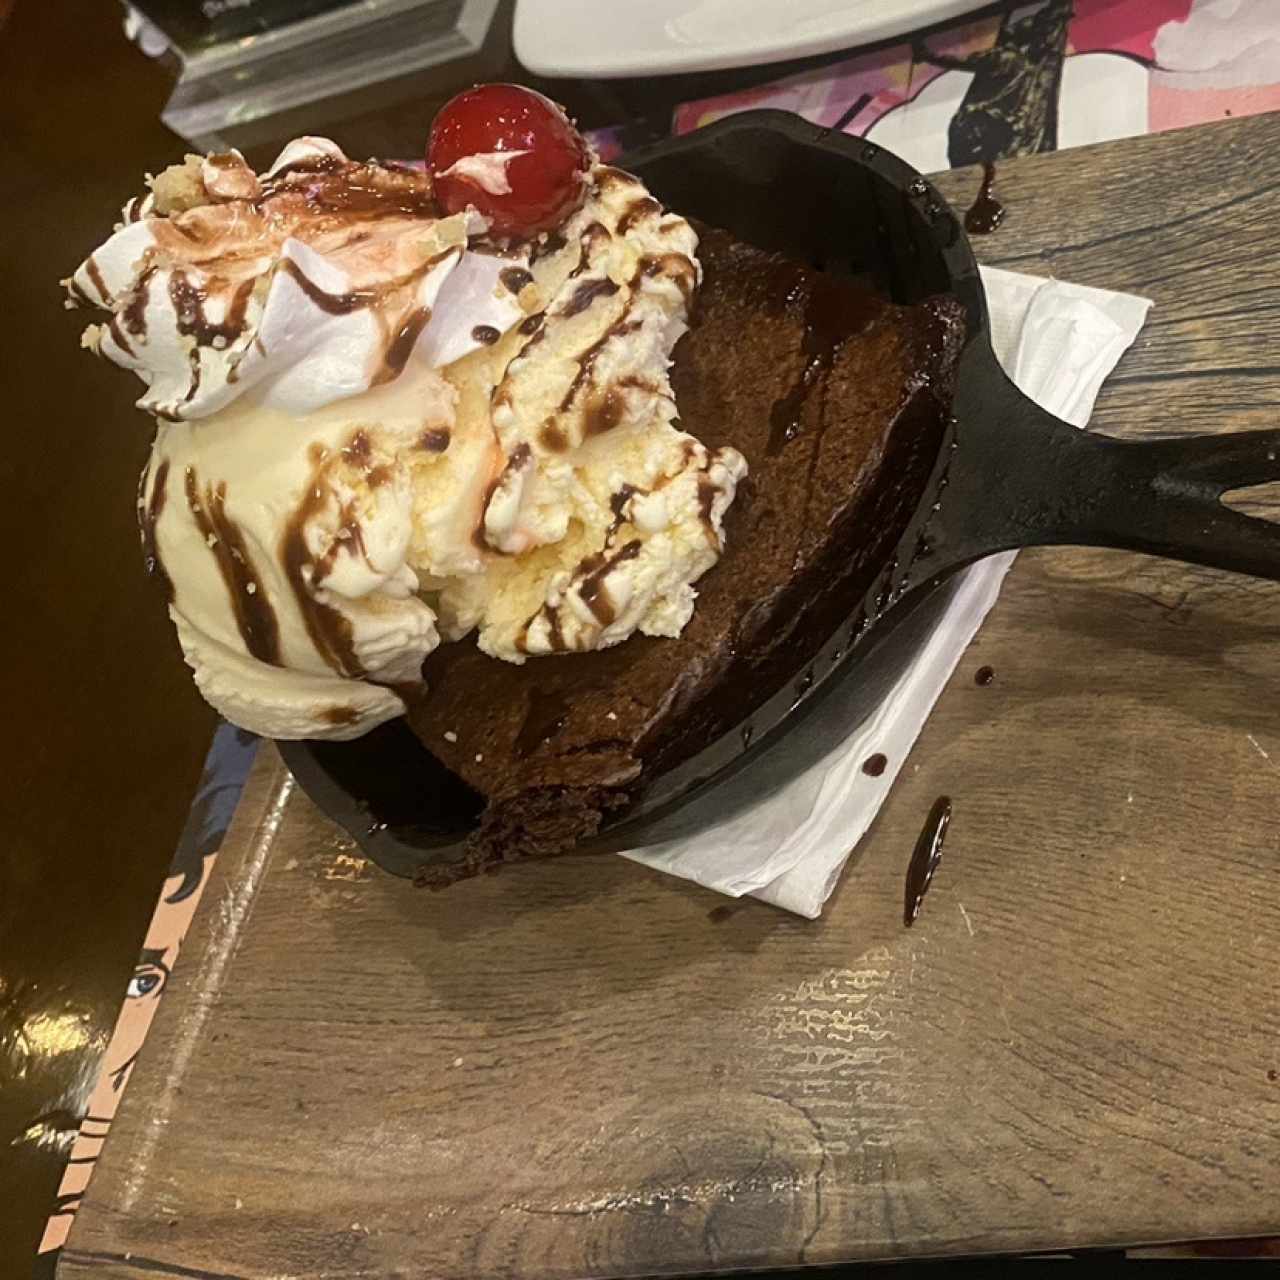 Desserts - Hot Fudge Brownie